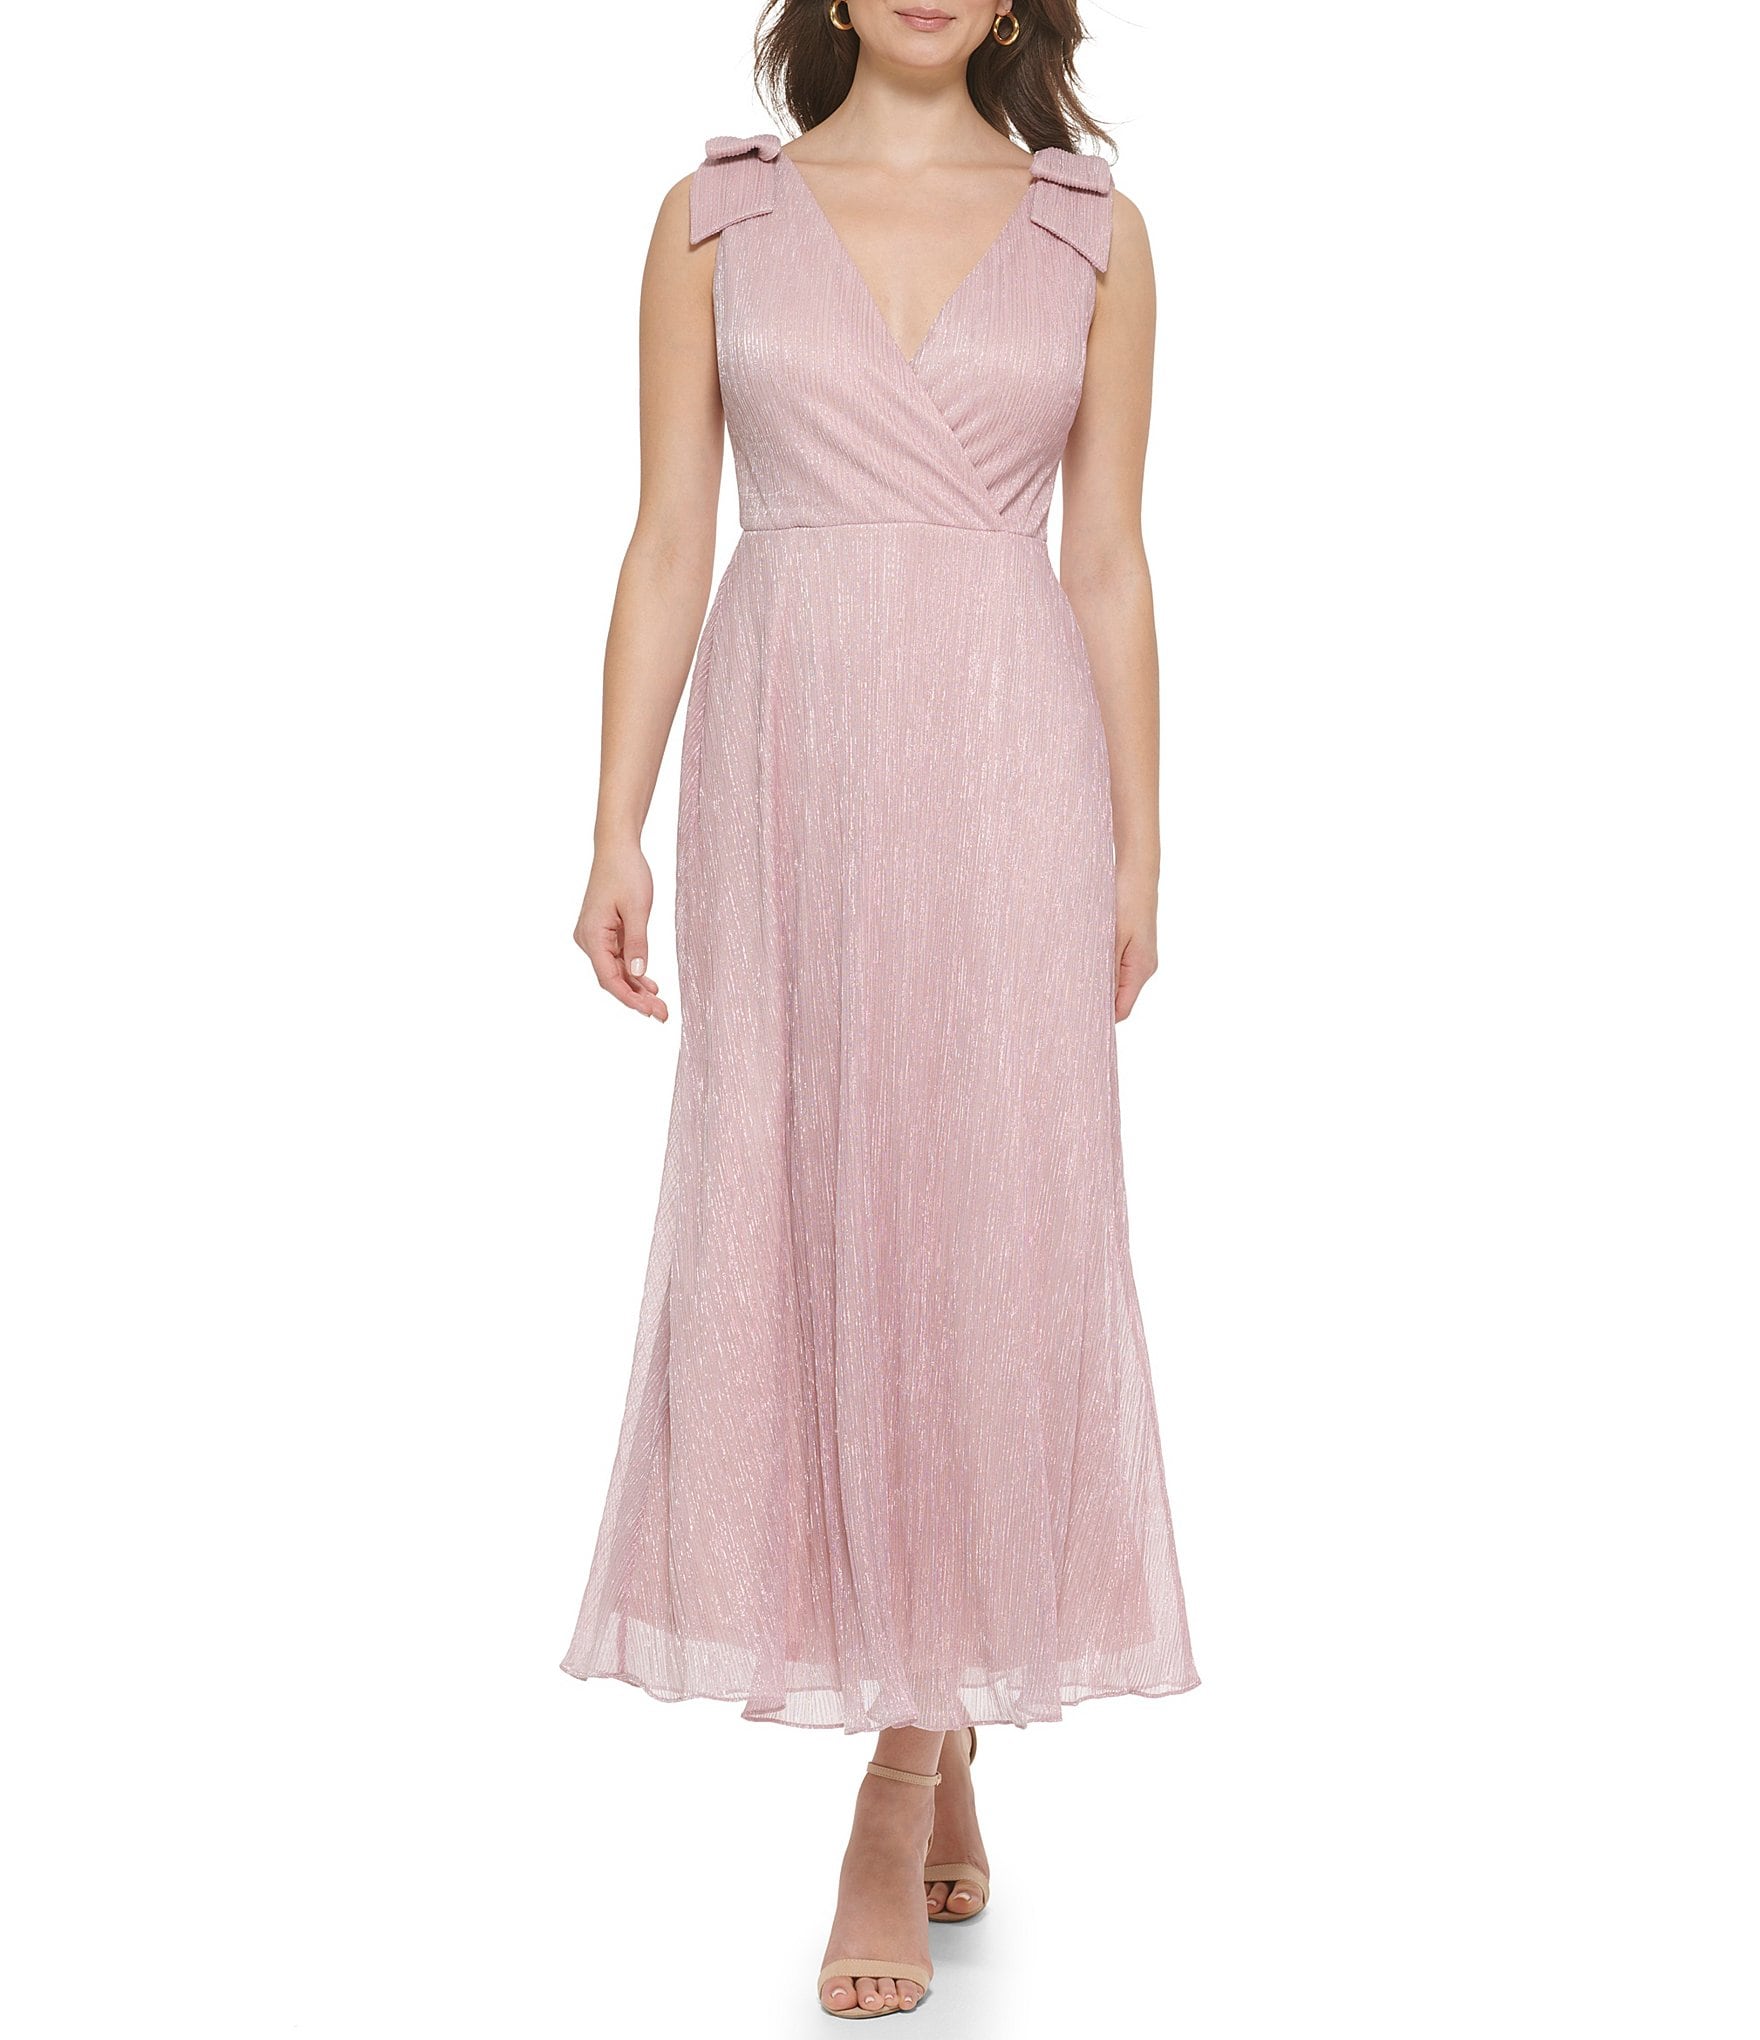 Kensie Blouson Wrap Dress in Pink